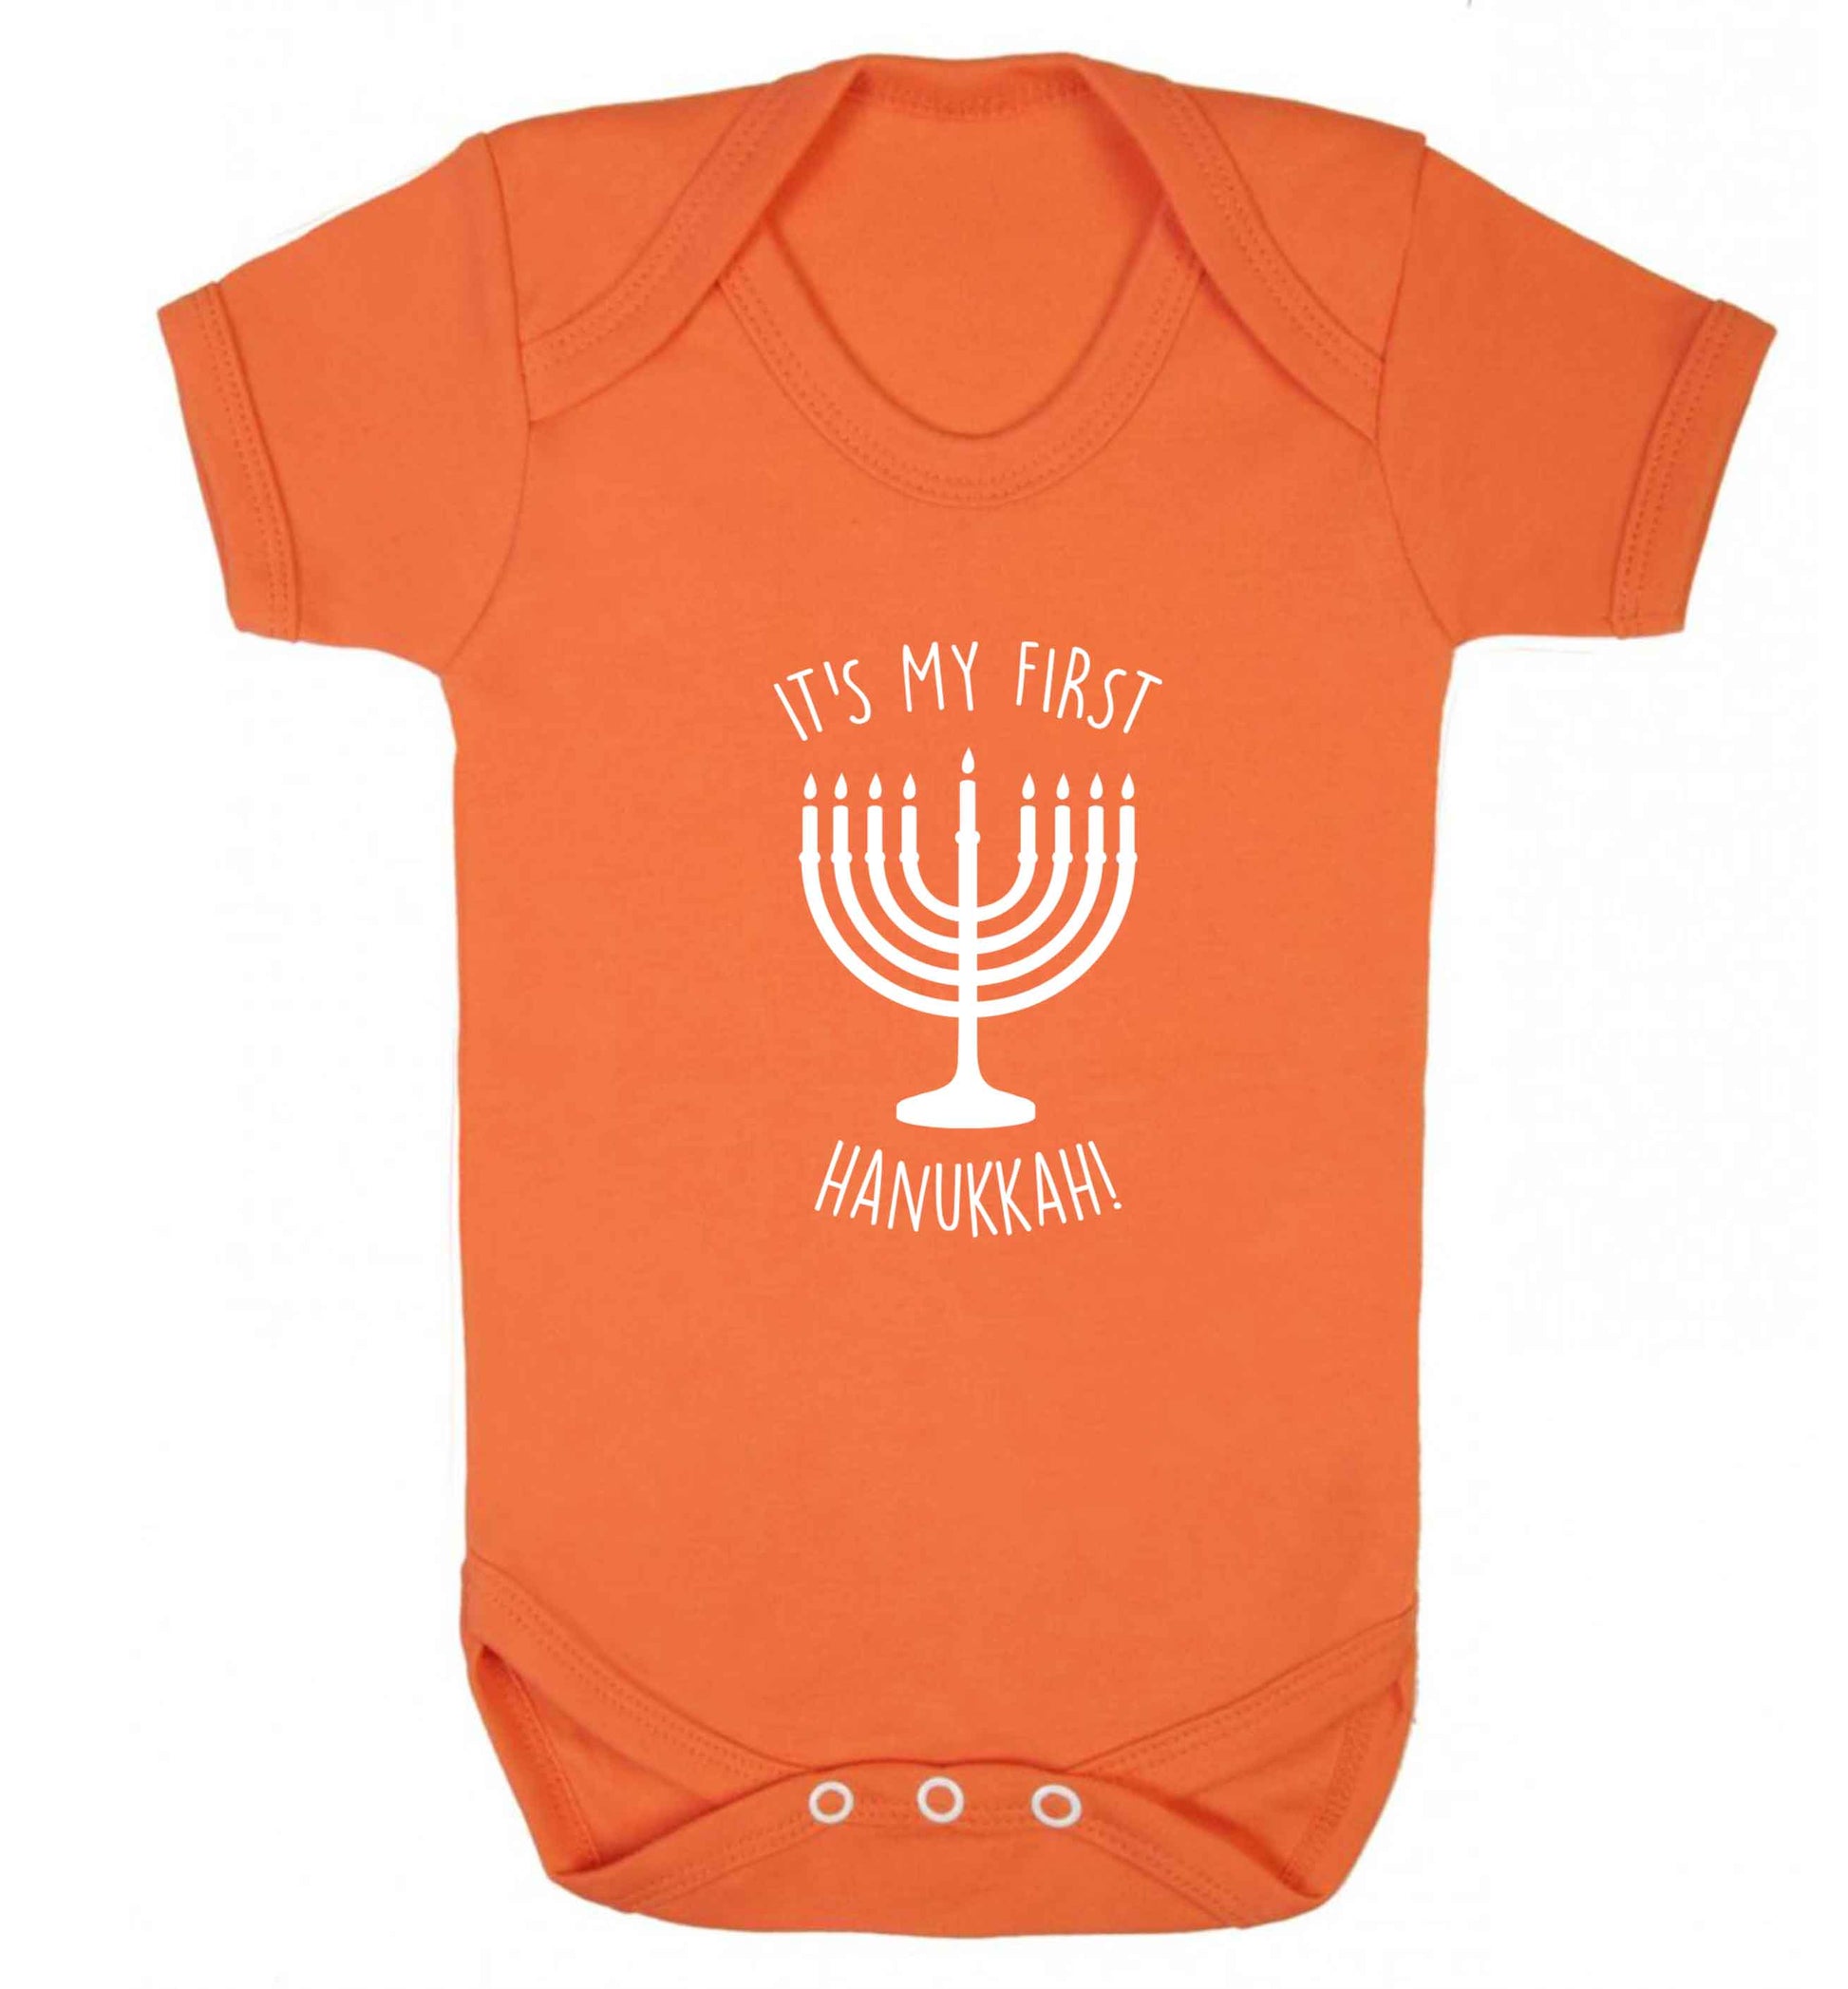 It's my first hanukkah baby vest orange 18-24 months